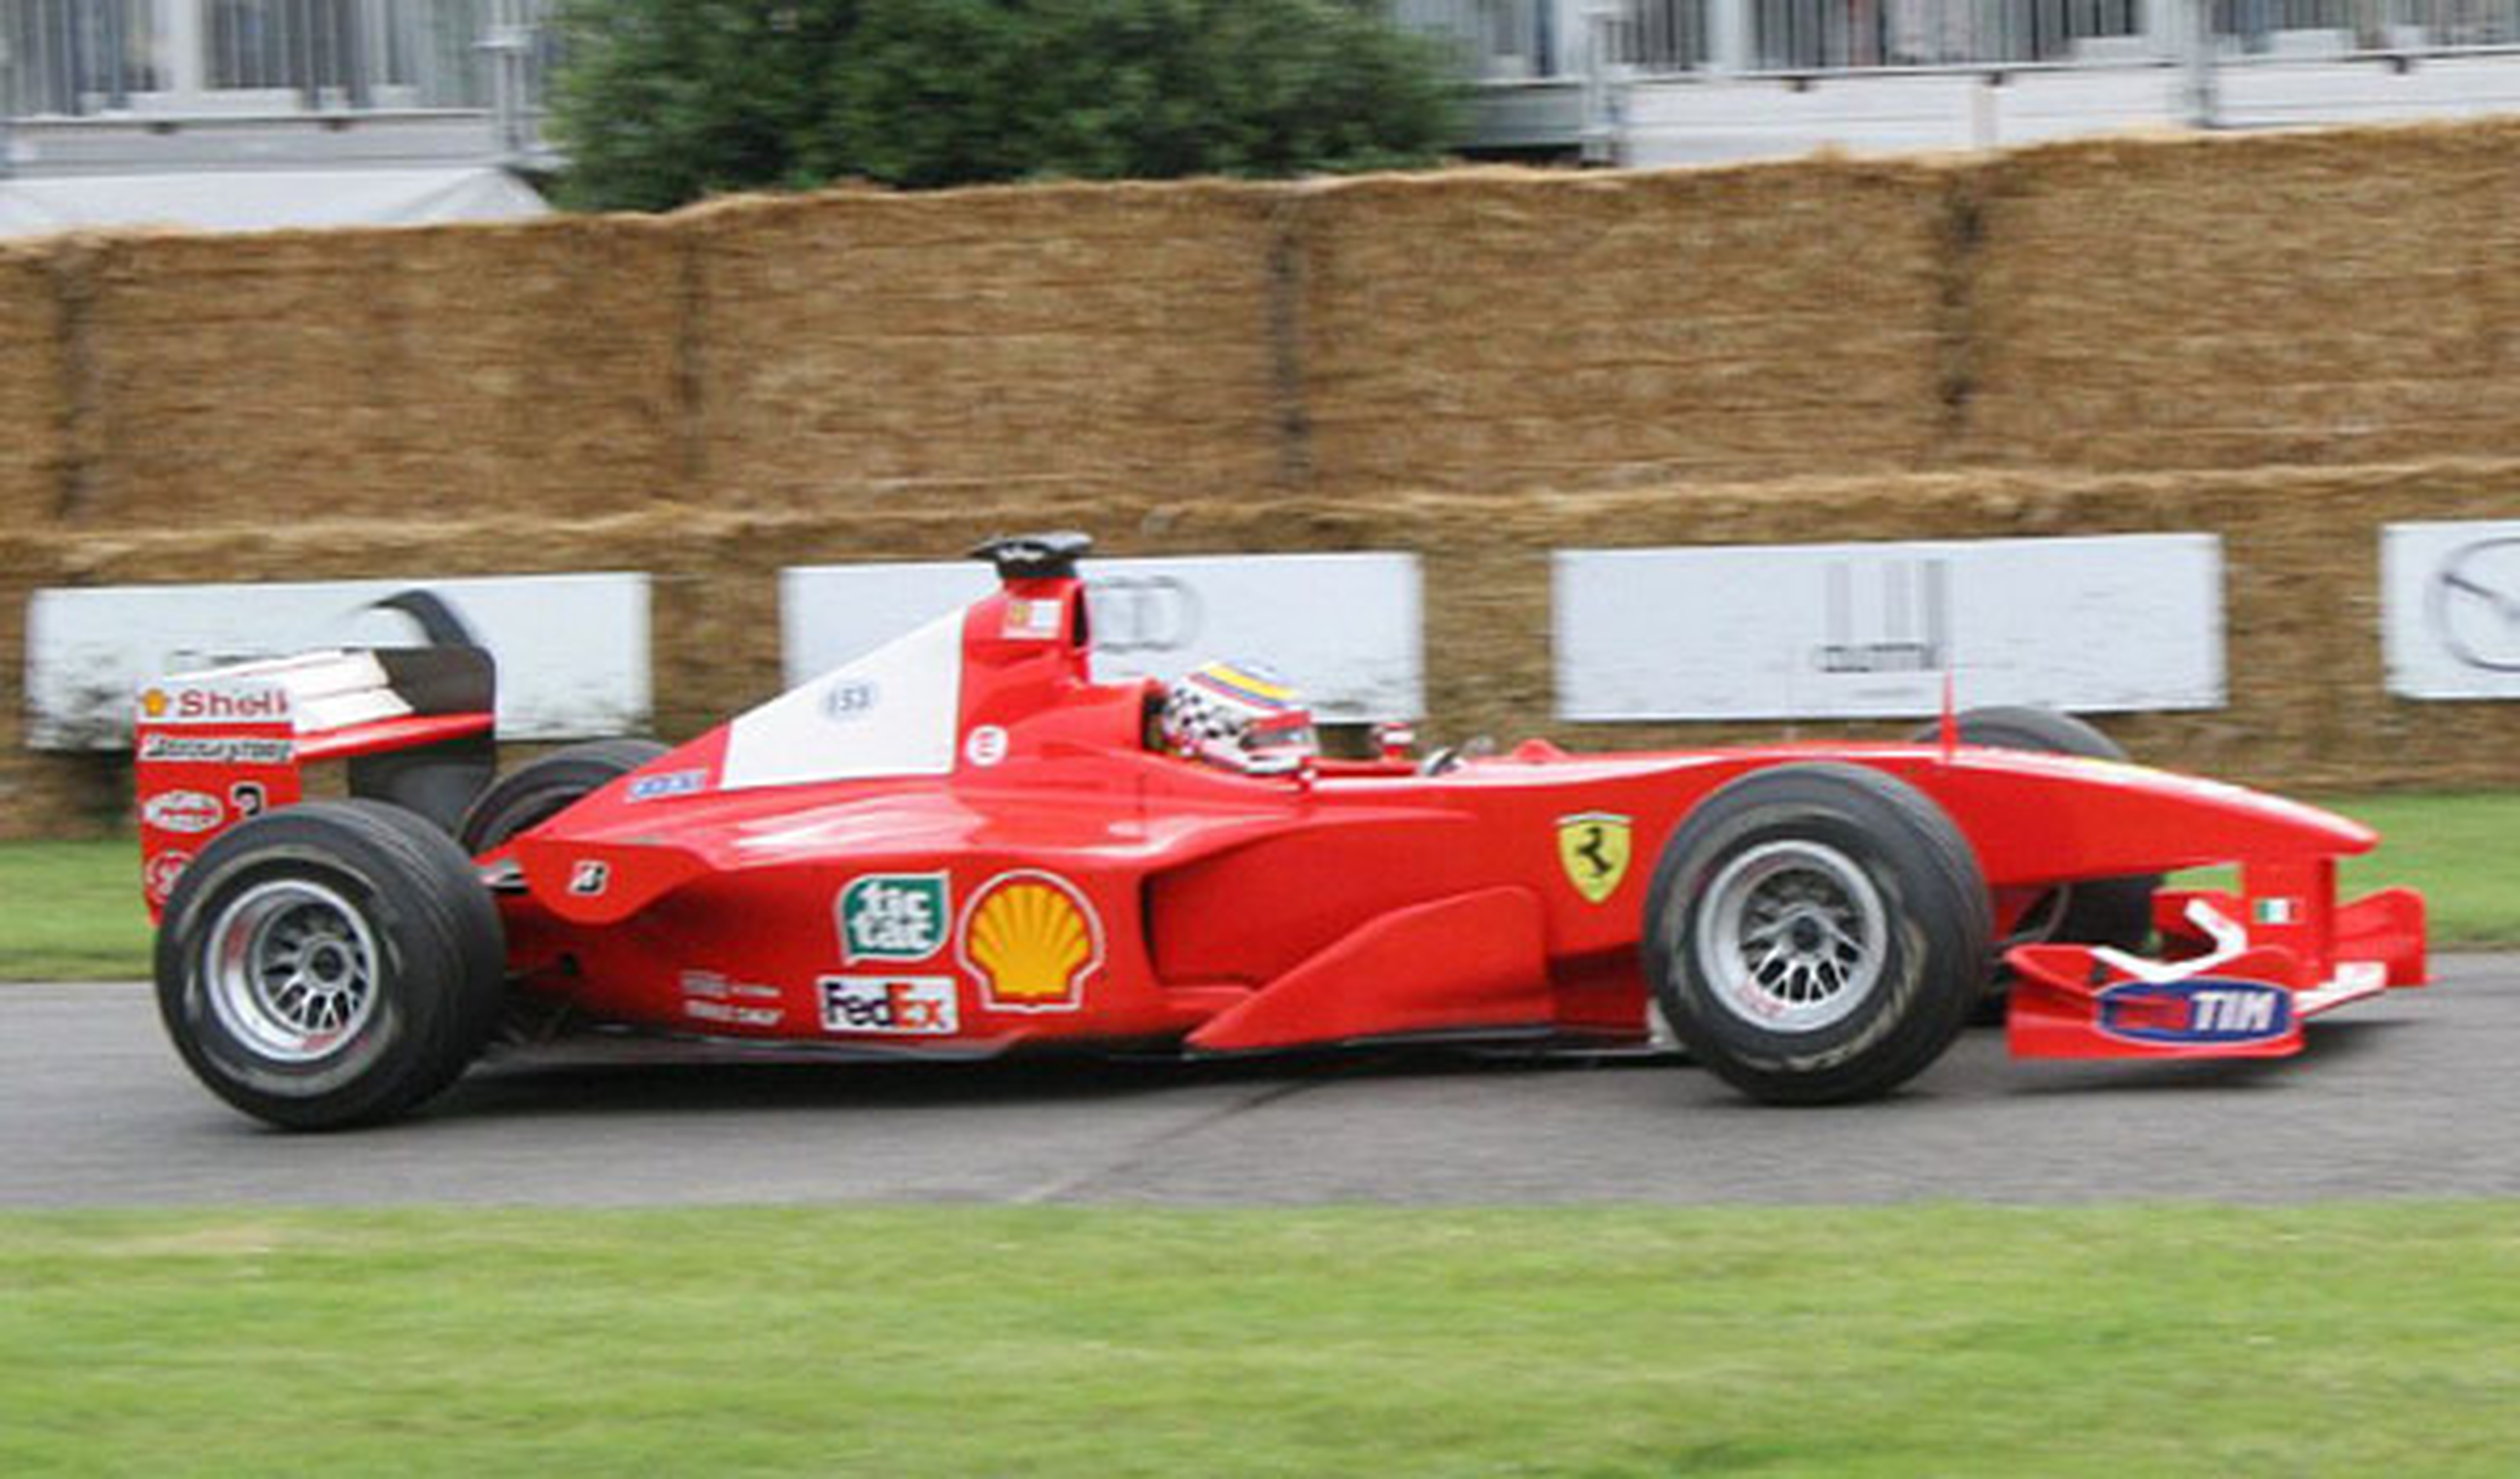 Ferrari F-2000